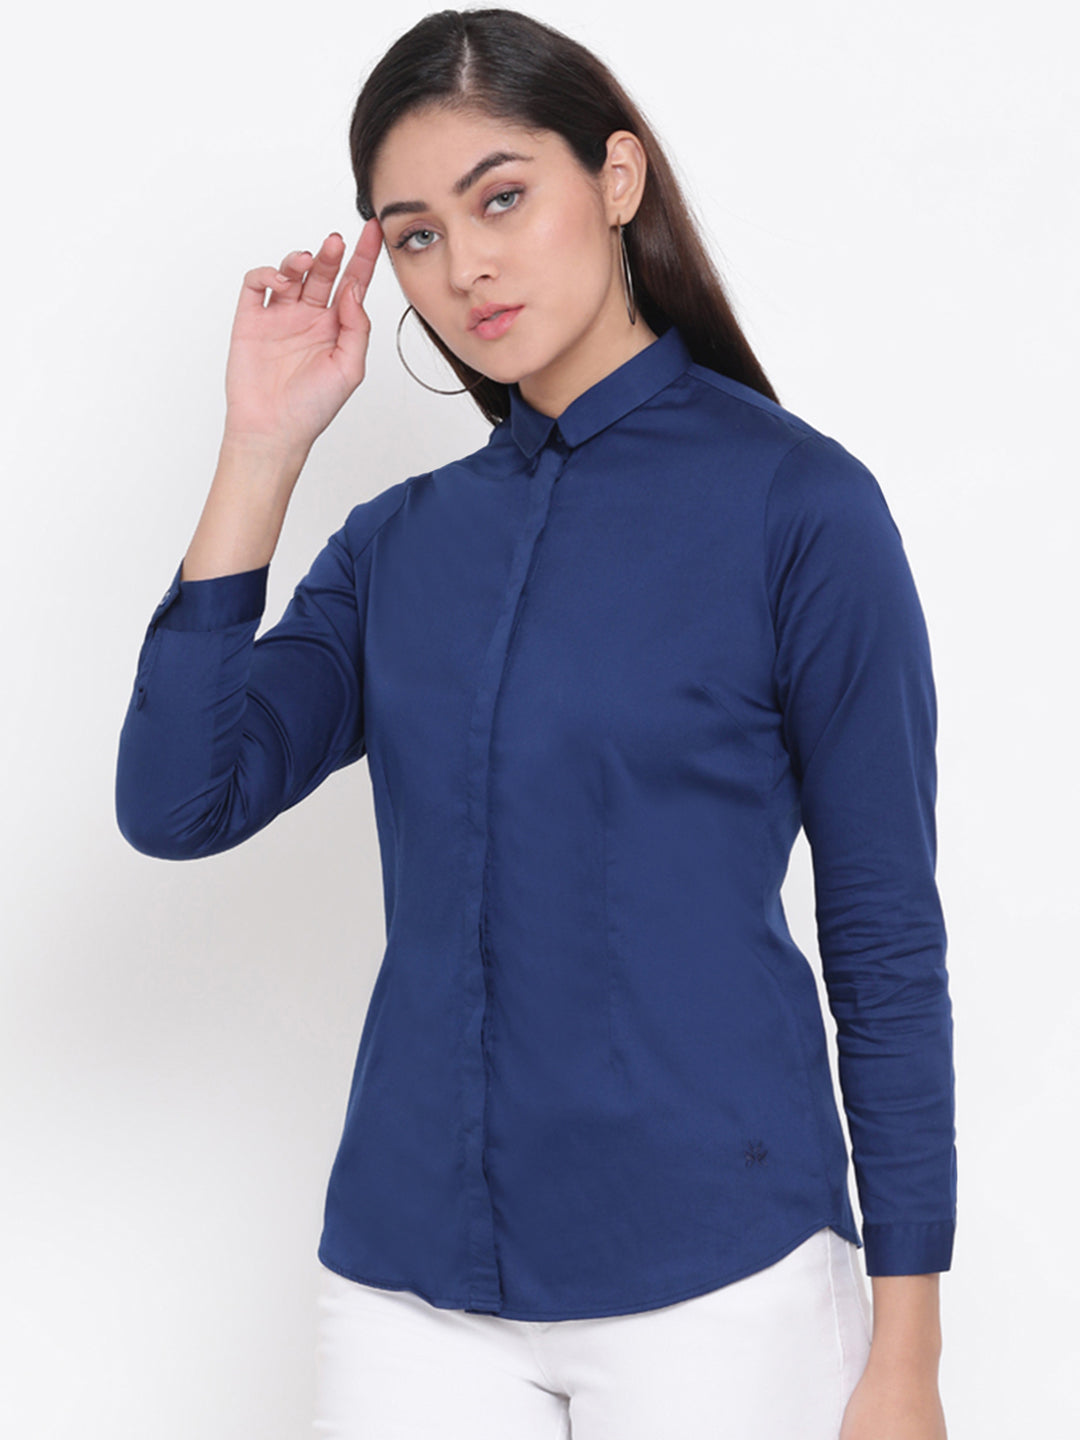 Blue Button up Shirt - Women Shirts